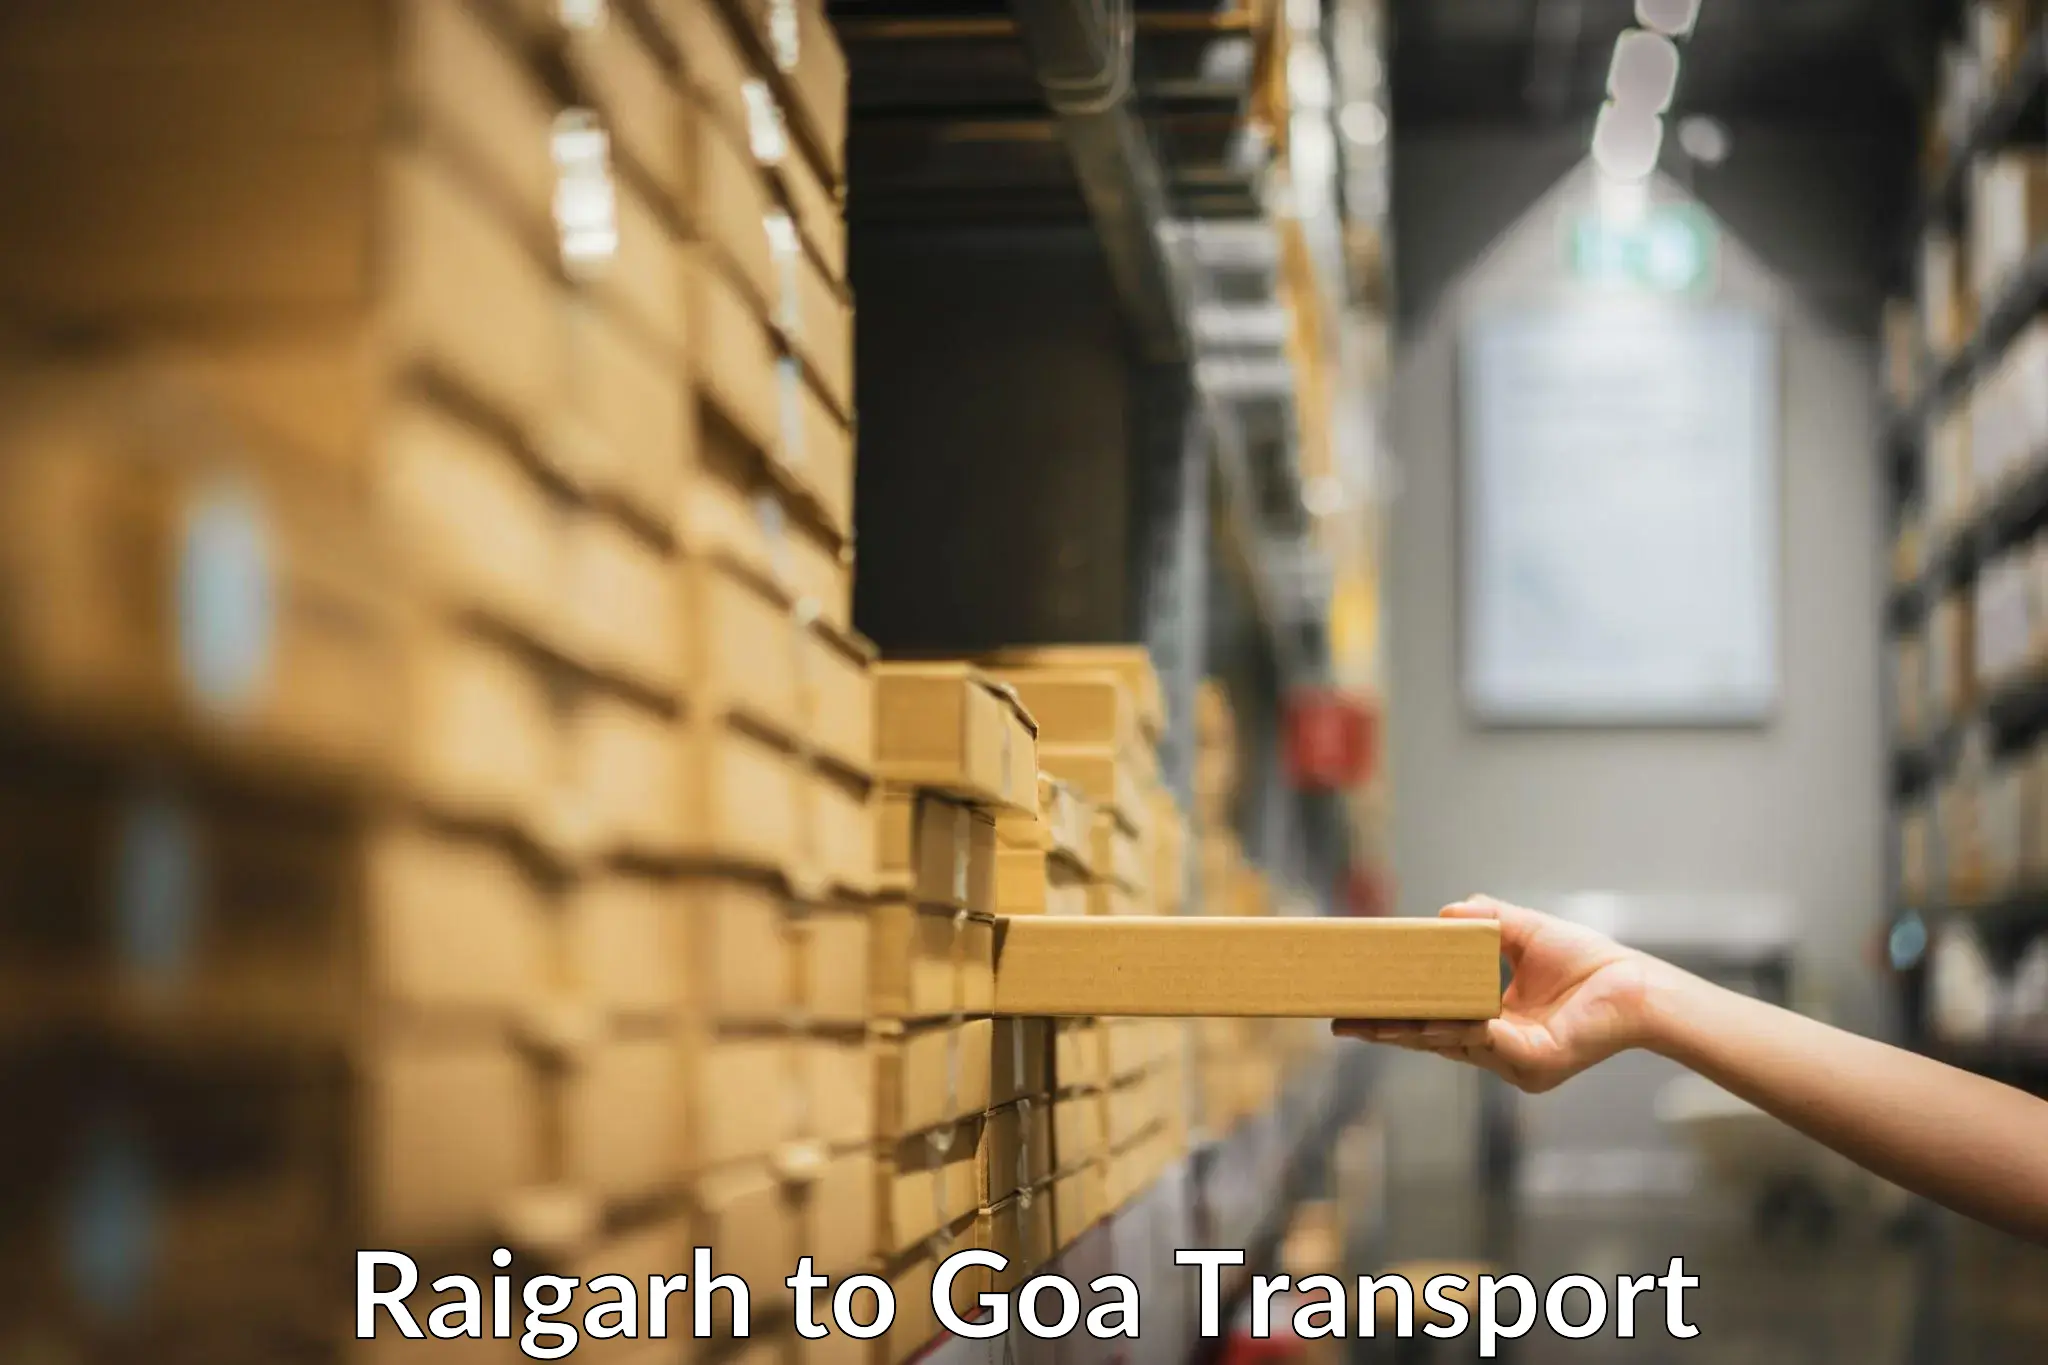 Nationwide transport services Raigarh to Mormugao Port